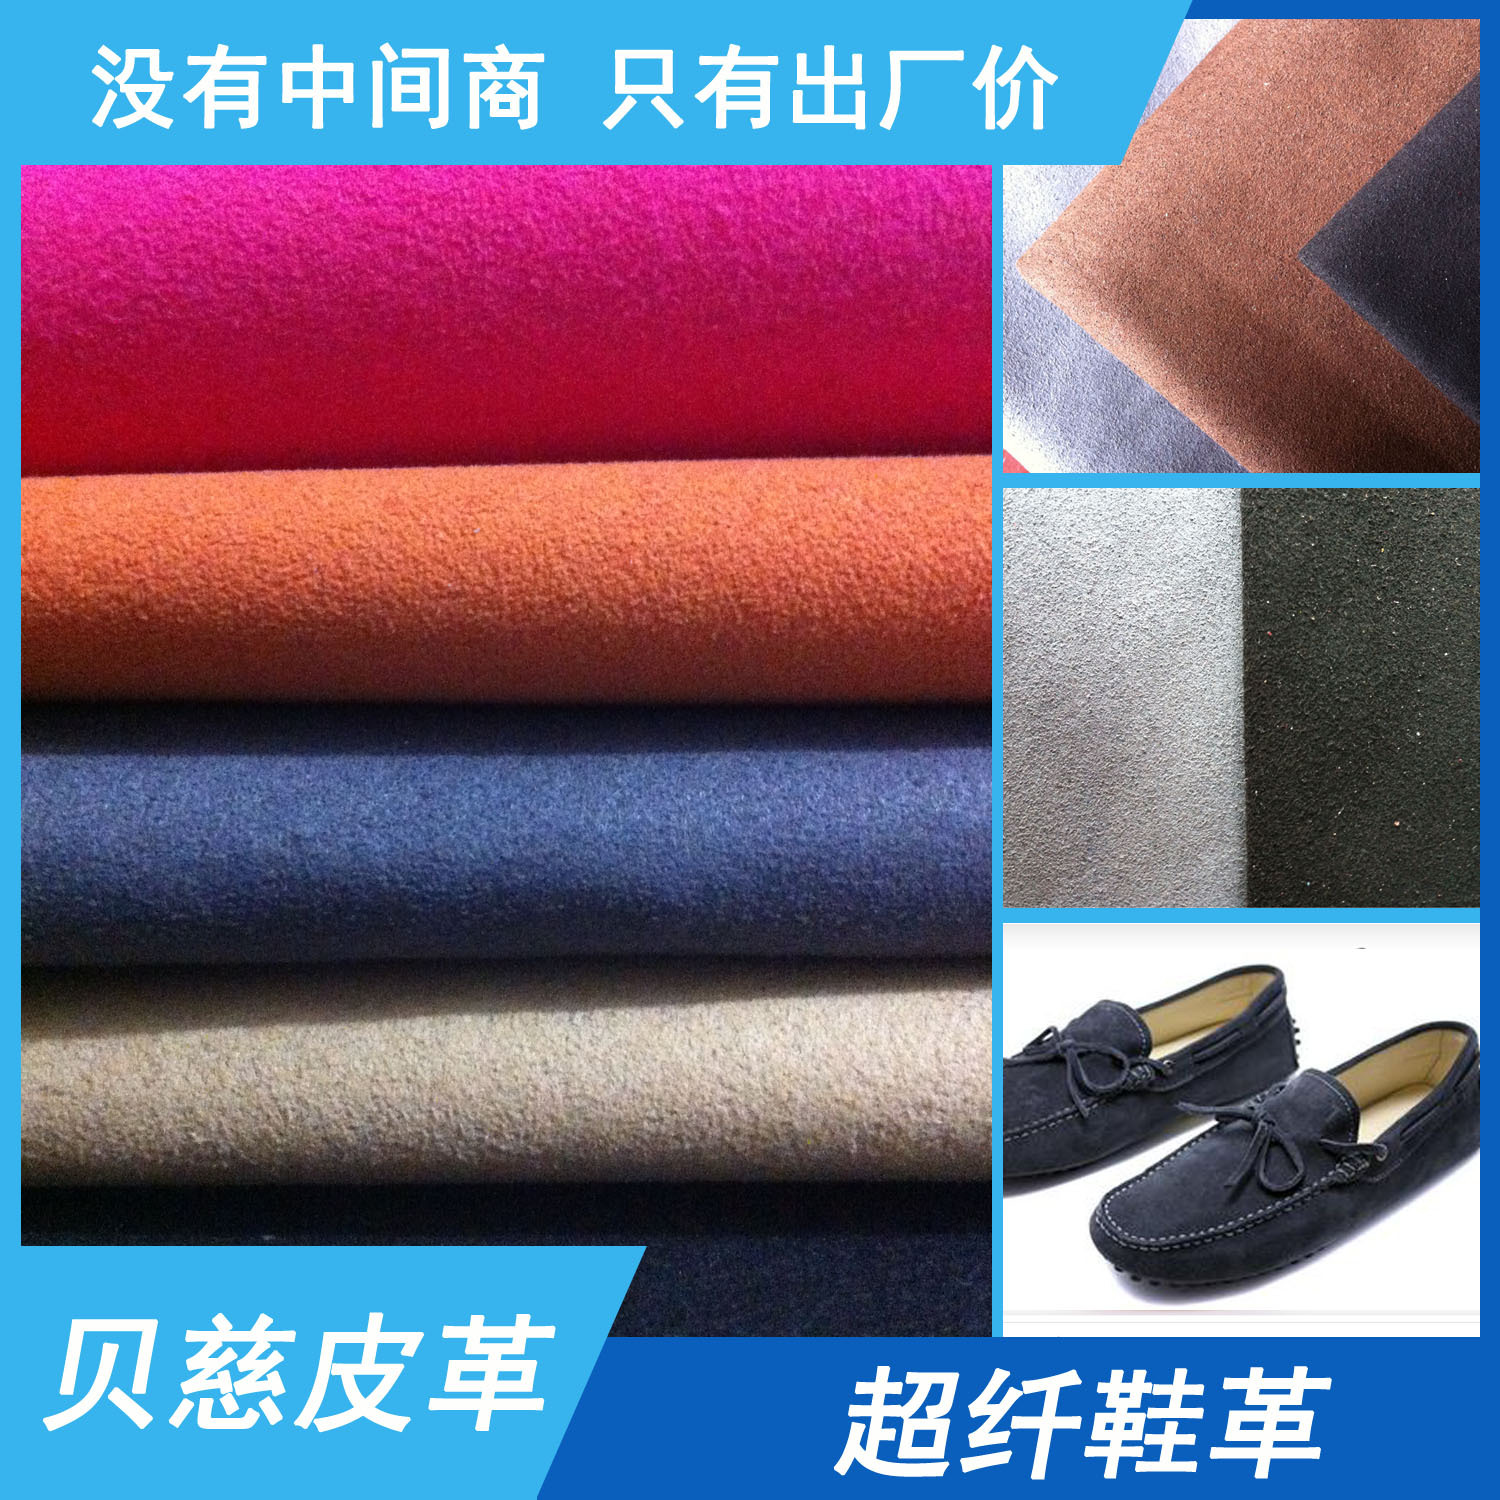 多色可选五年质保绒面超纤现货柔软137cm上海1.4mm贝慈超纤真超纤